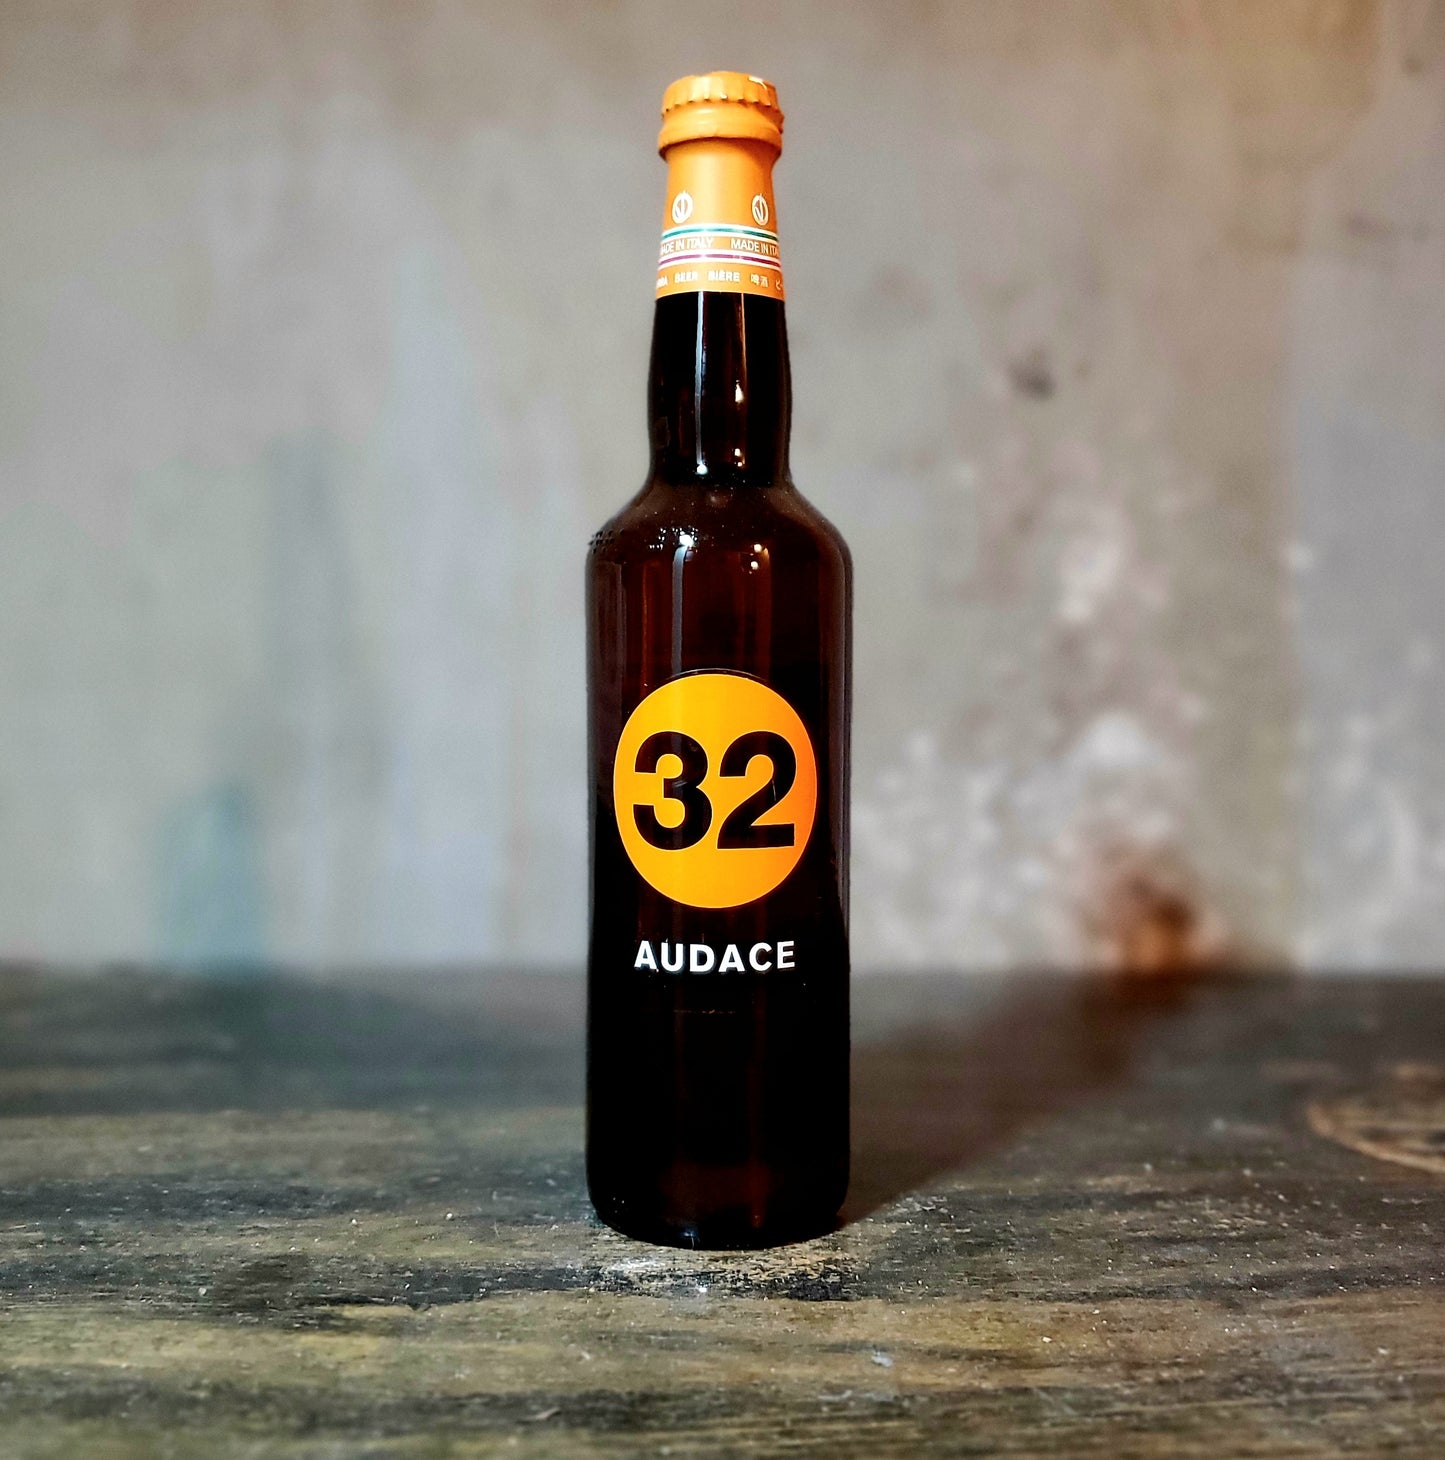 32 via dei Birrai "Audace" Belgian Strong Ale